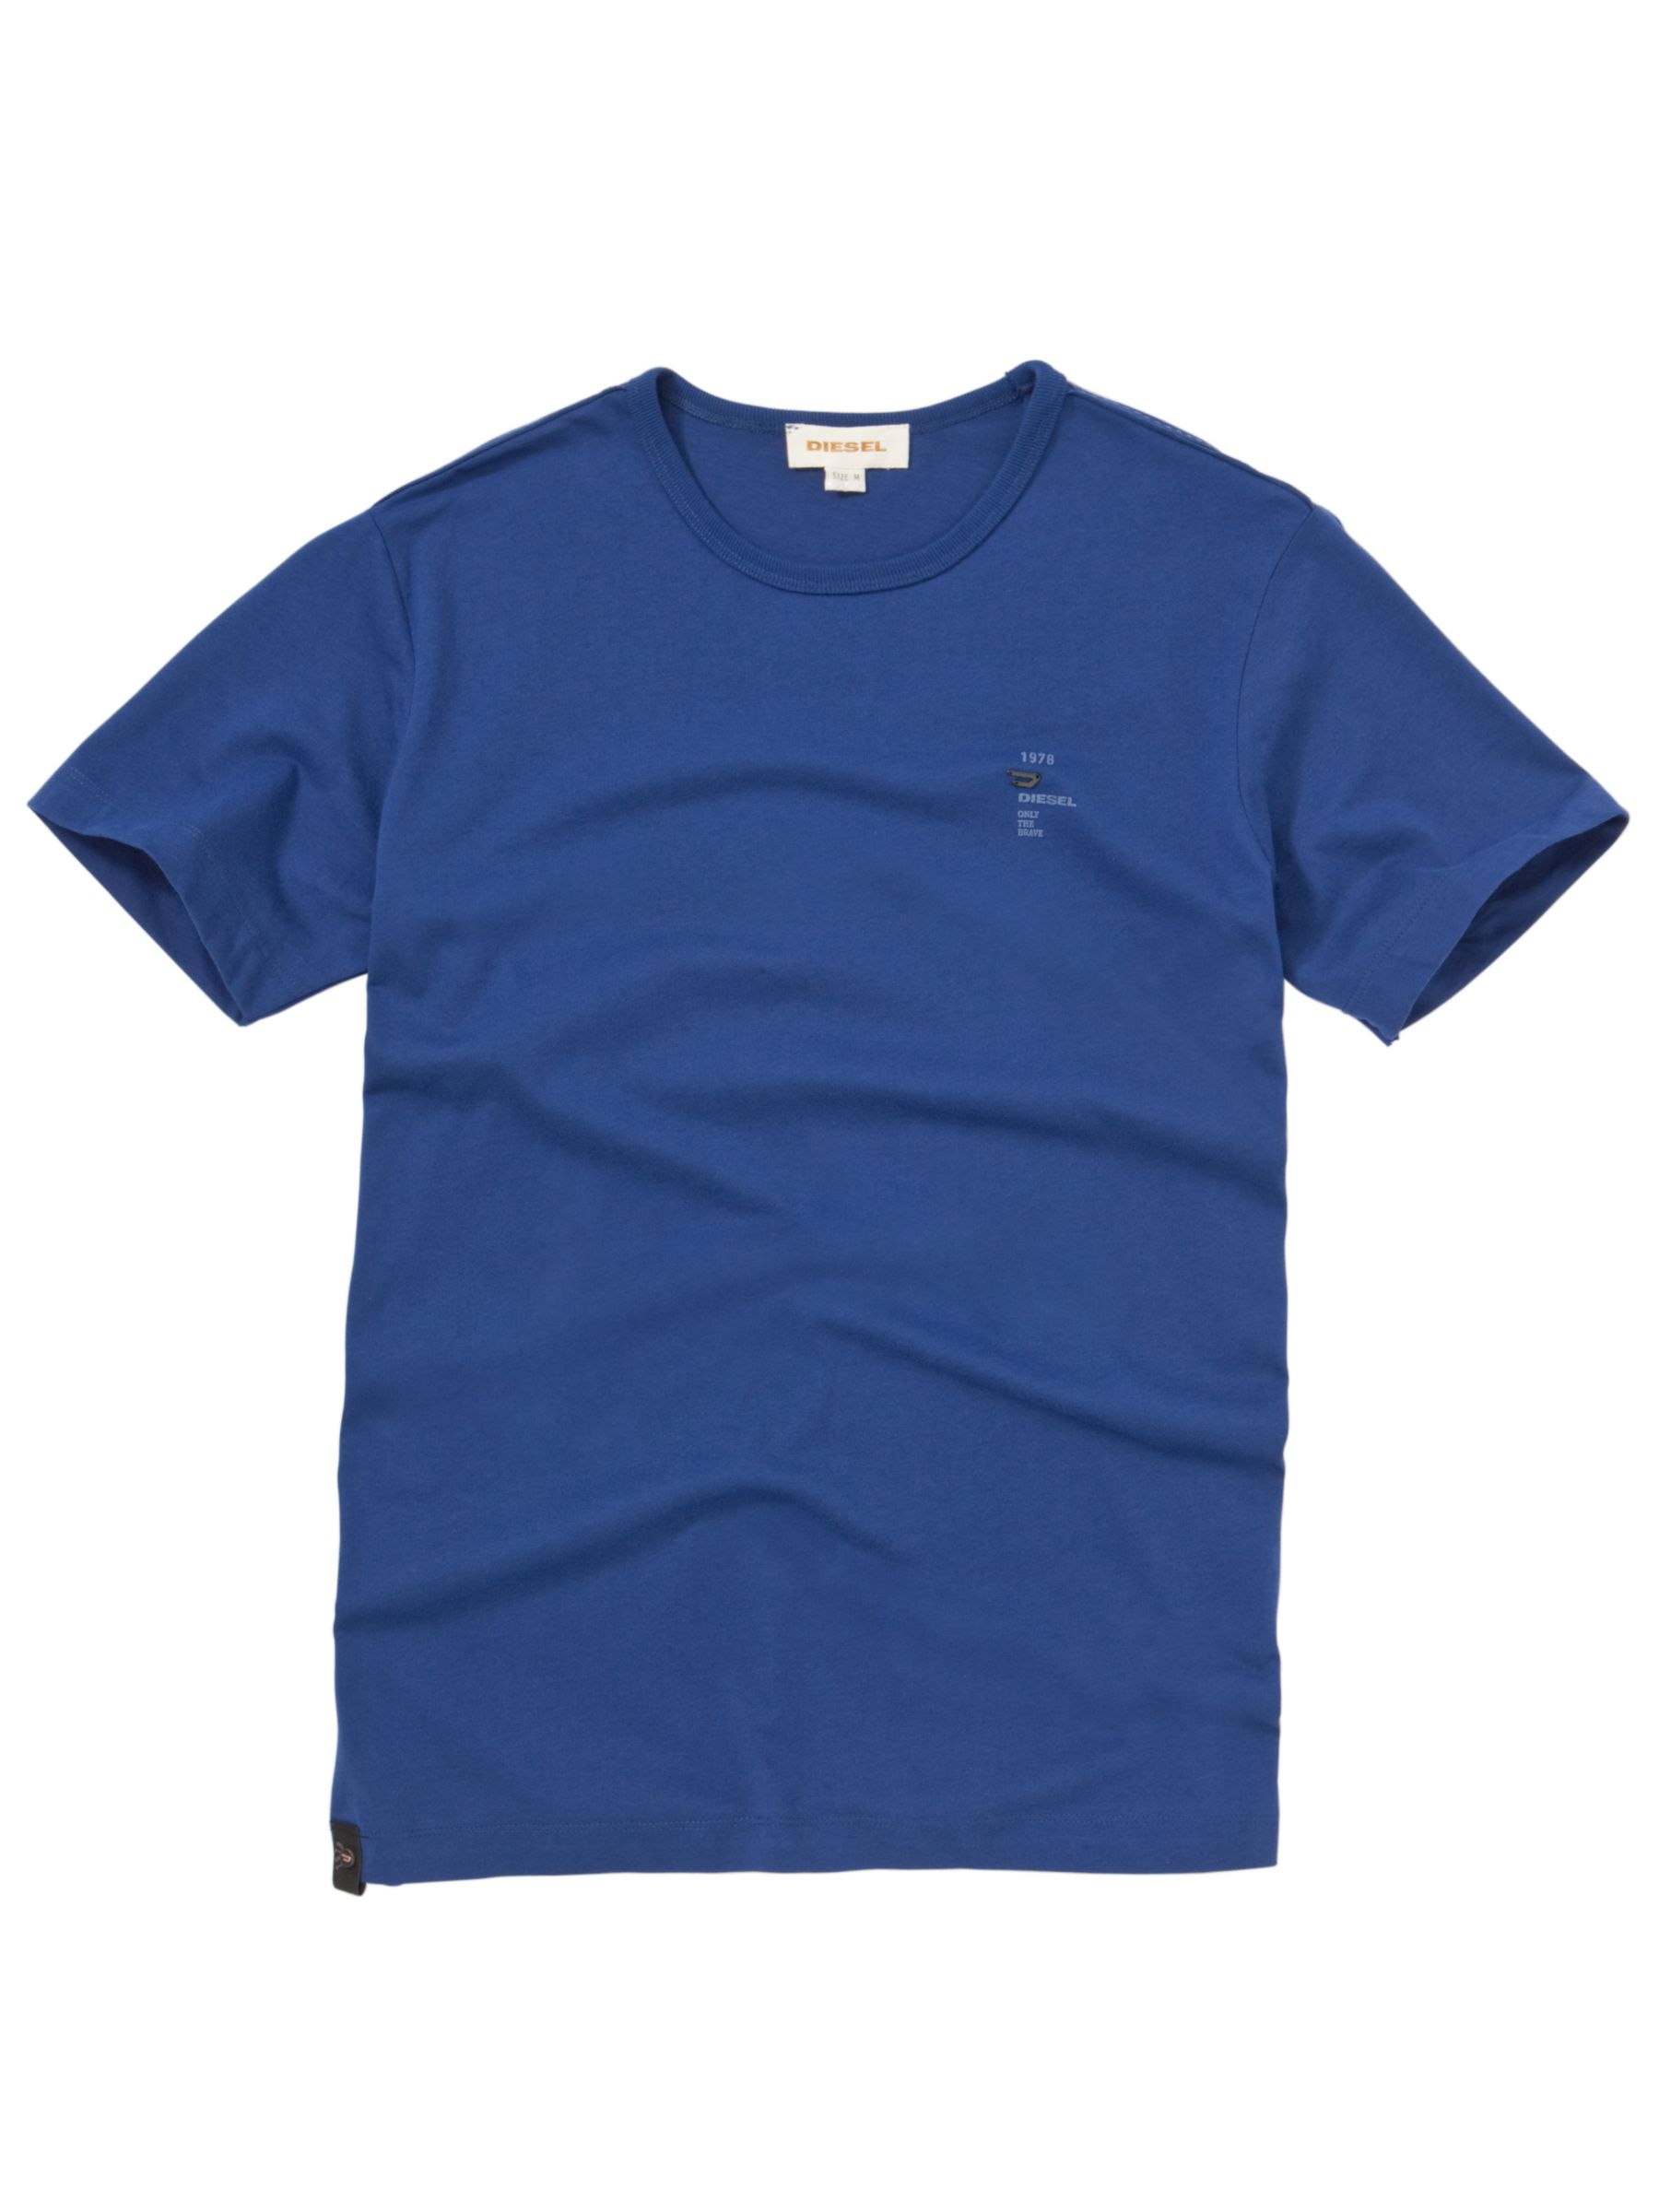 T-Calor Basic Short-Sleeve T-Shirt, Royal